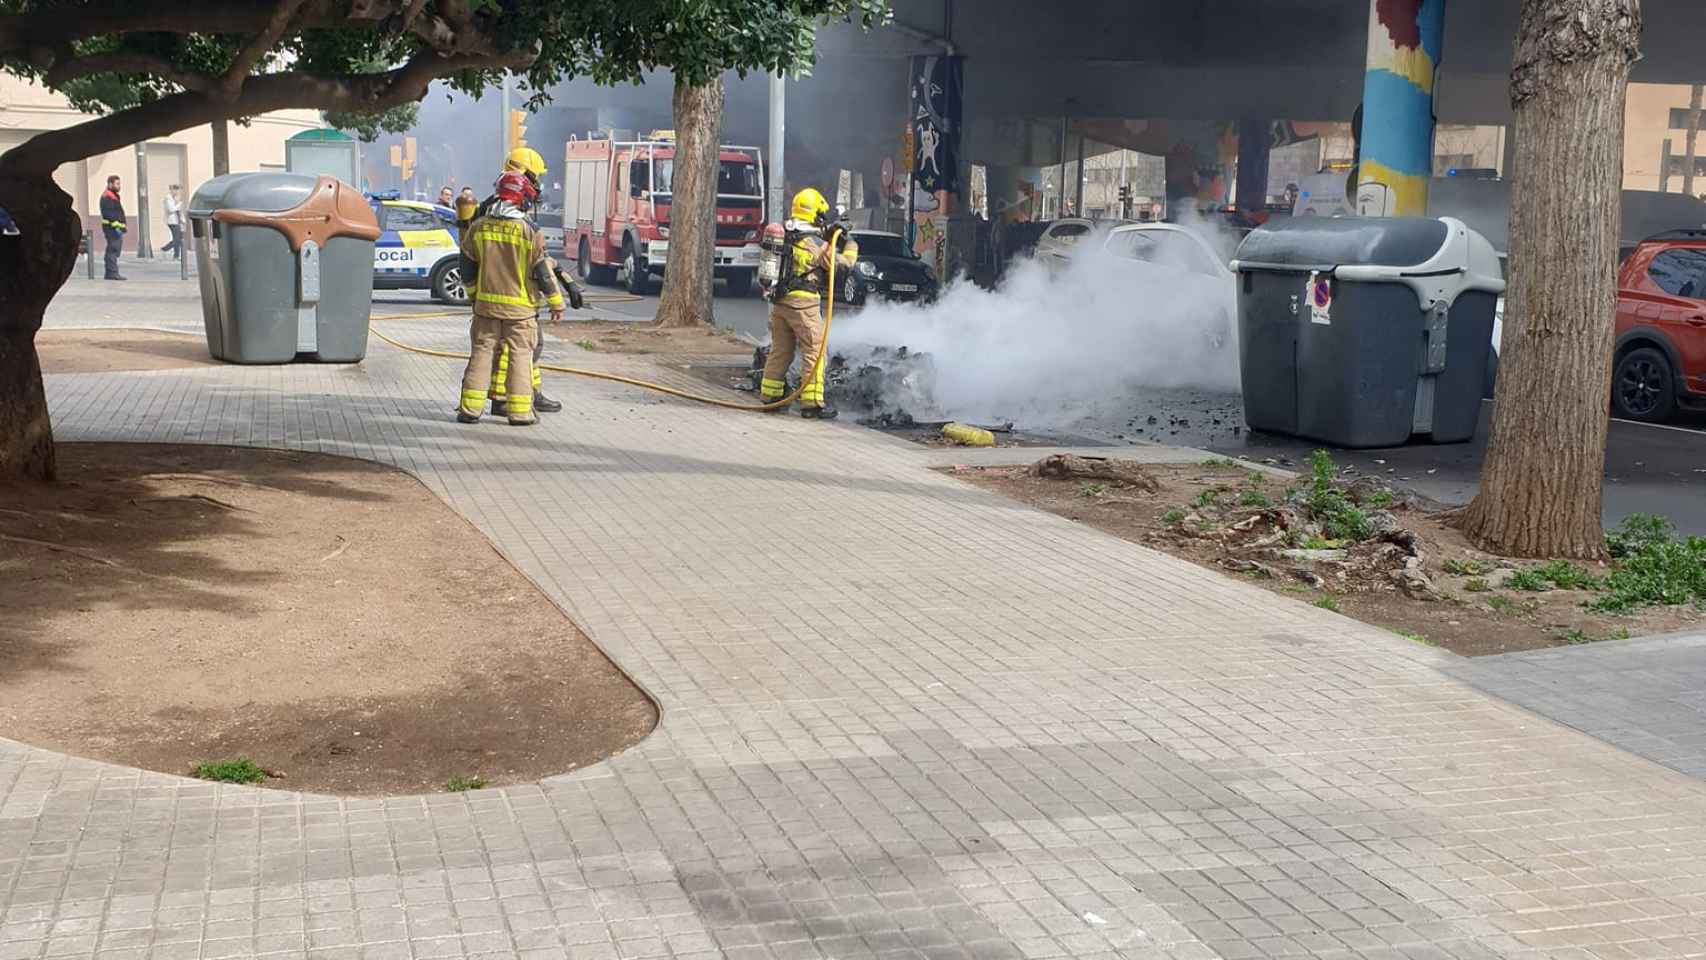 Bomberos extinguen el incendio de un contenedor en Sant Adrià